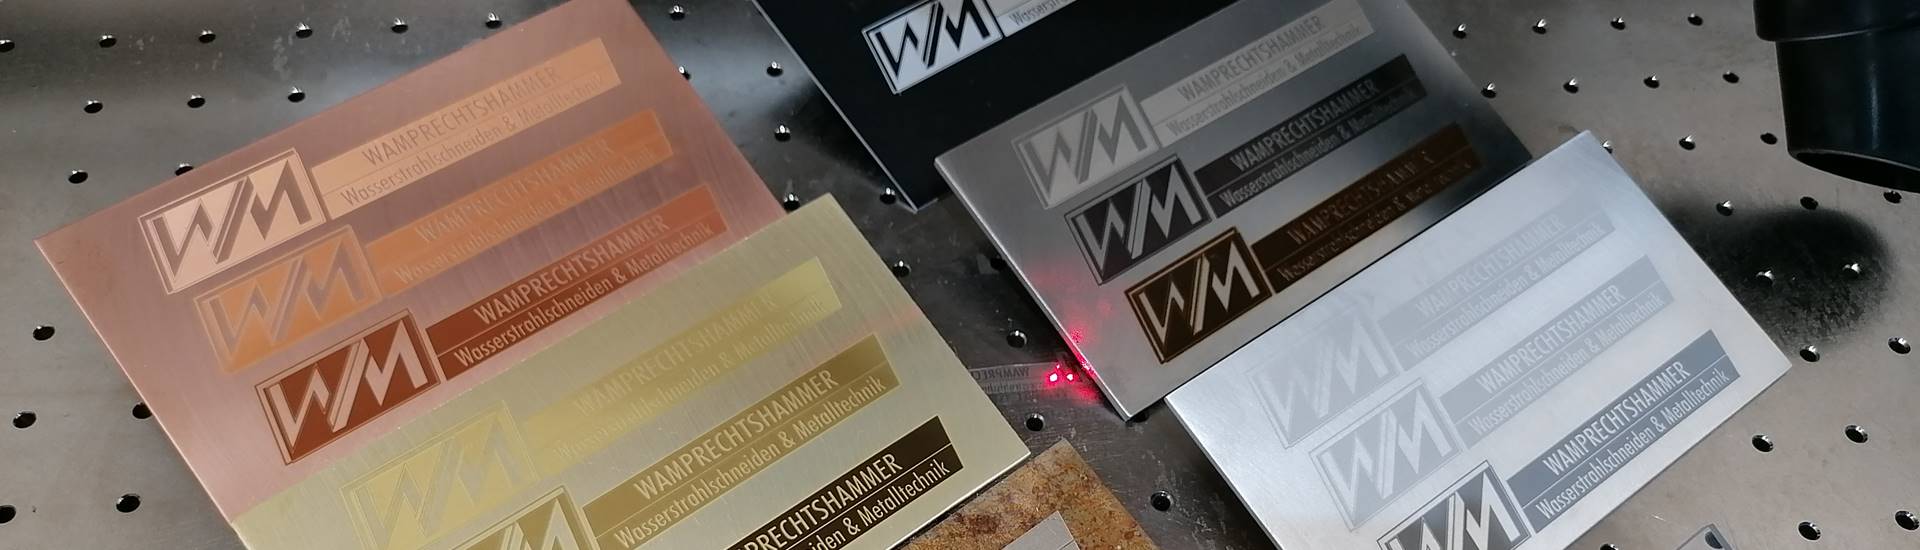 Wamprechtshammer Metalltechnik GmbH